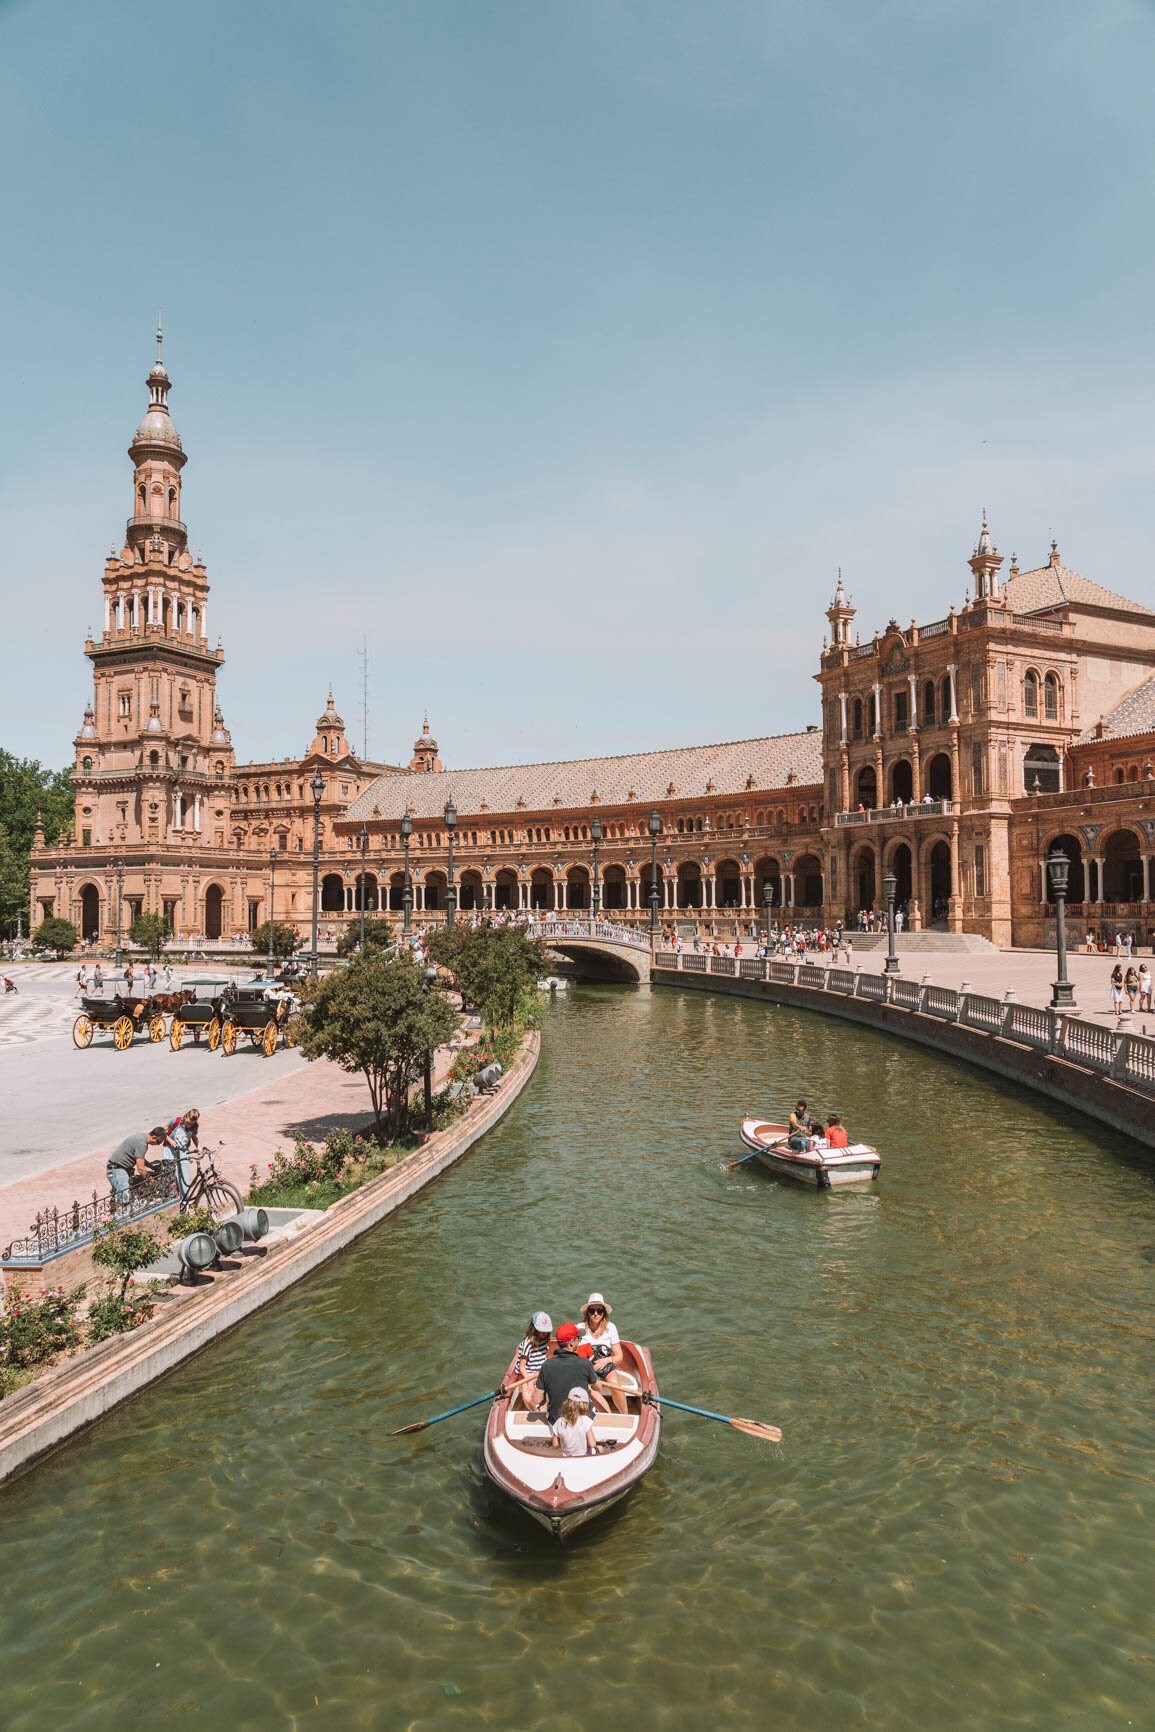 Plaza de España - Seville Spain Travel Guide